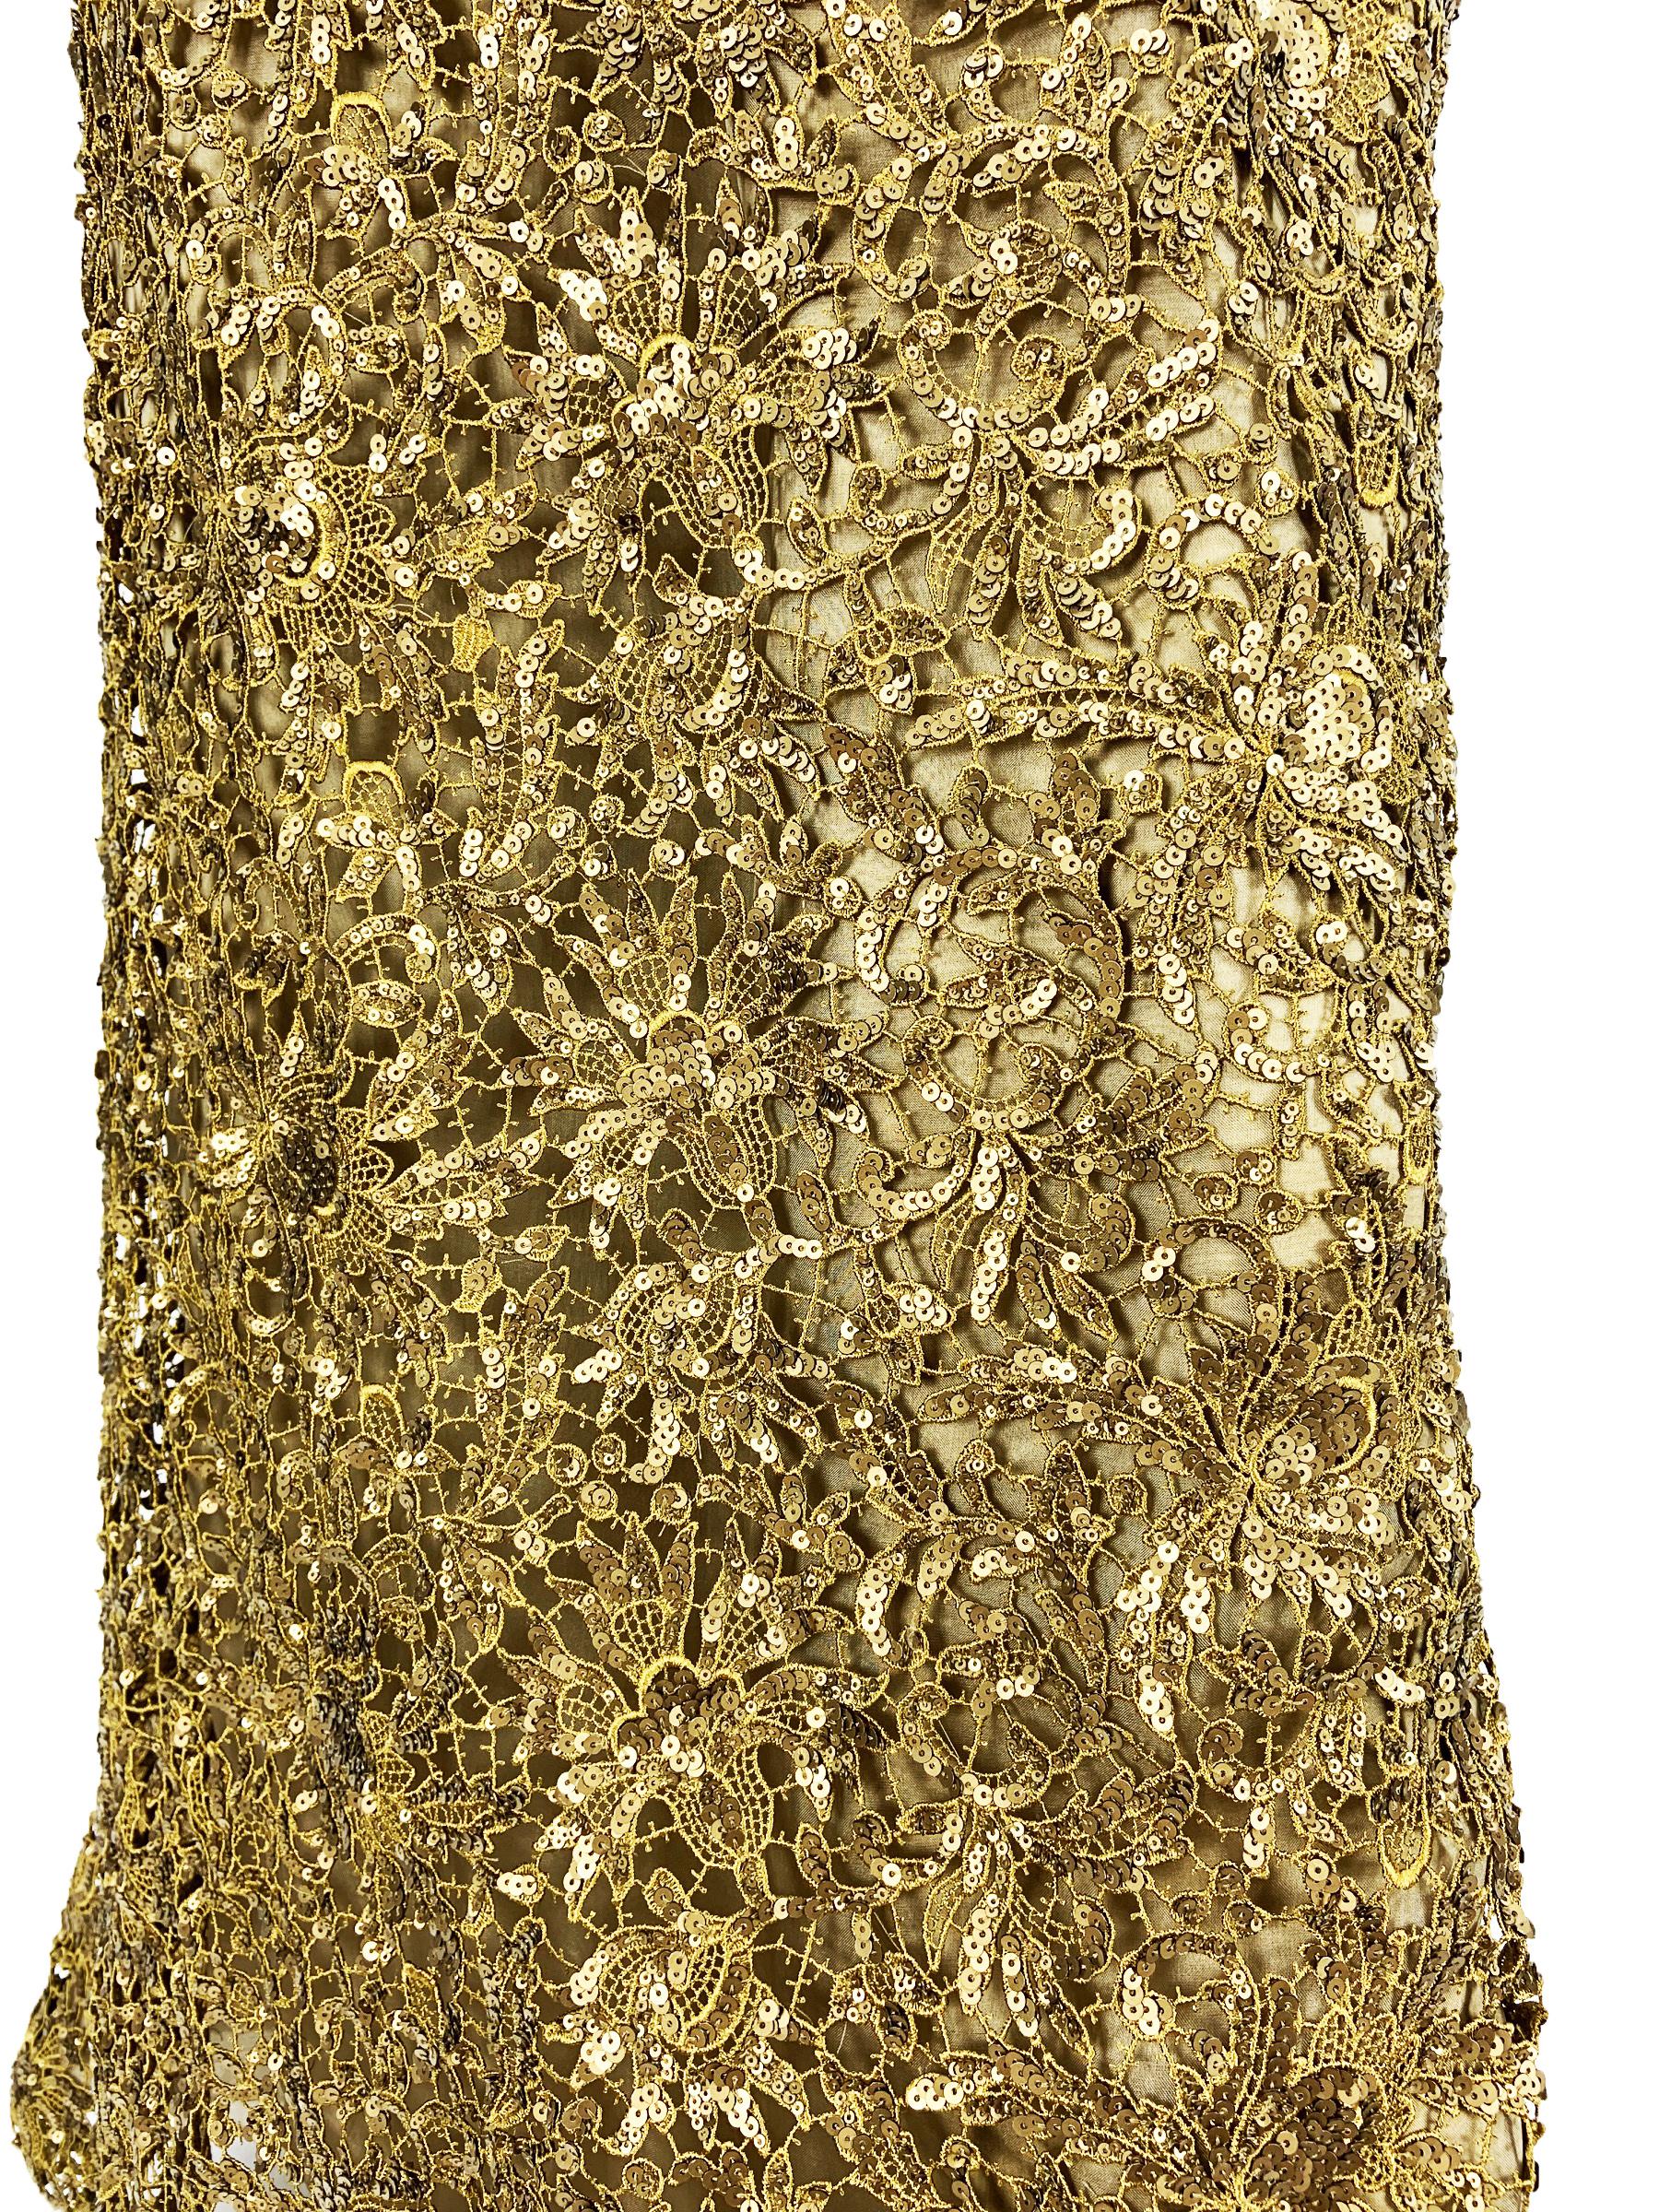 Oscar De La Renta PF 2012 Gold Lace Sequin Embellished Dress Gown + Jacket  For Sale 5